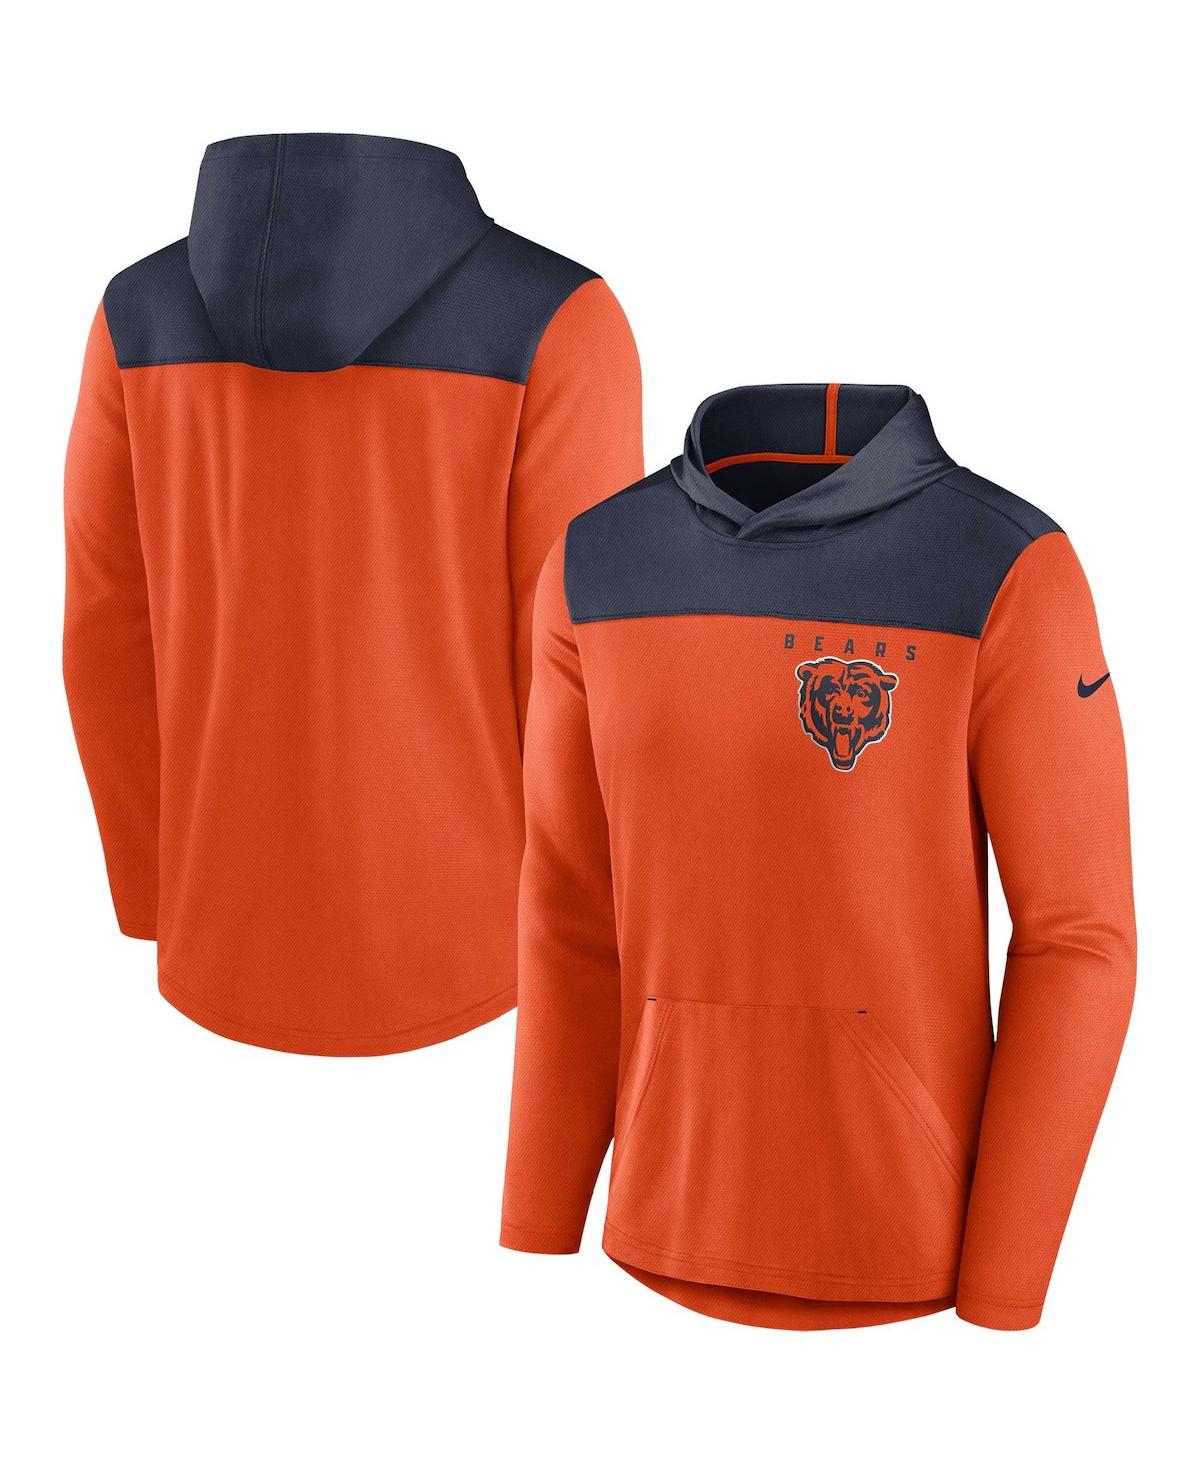 Nike Men's Orange Chicago Bears Fan Gear Pullover Hoodie - Orange